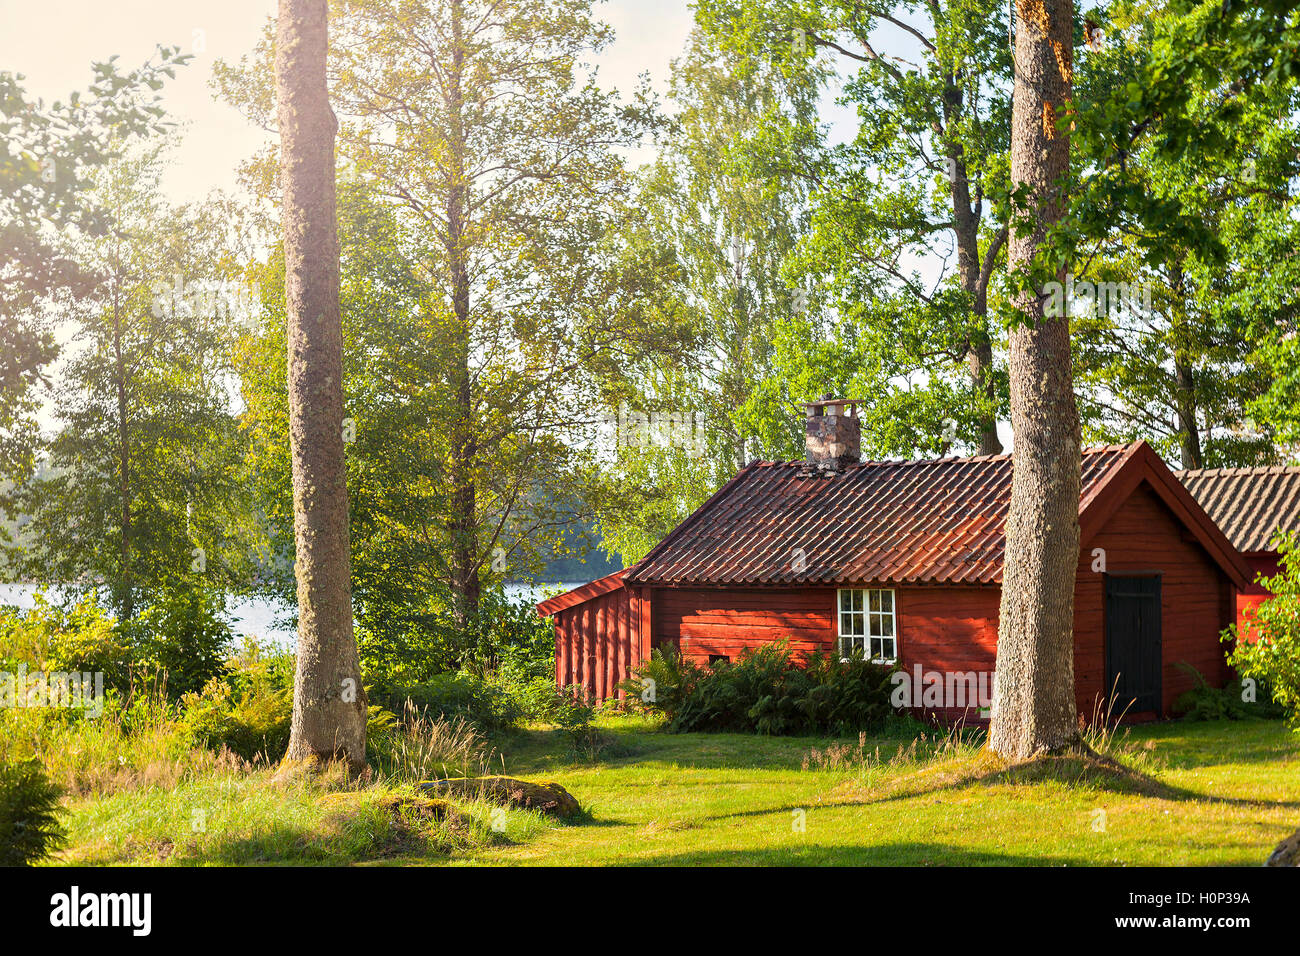 Image de bois rouge pittoresque lake house. Pays-bas, Suède. Banque D'Images